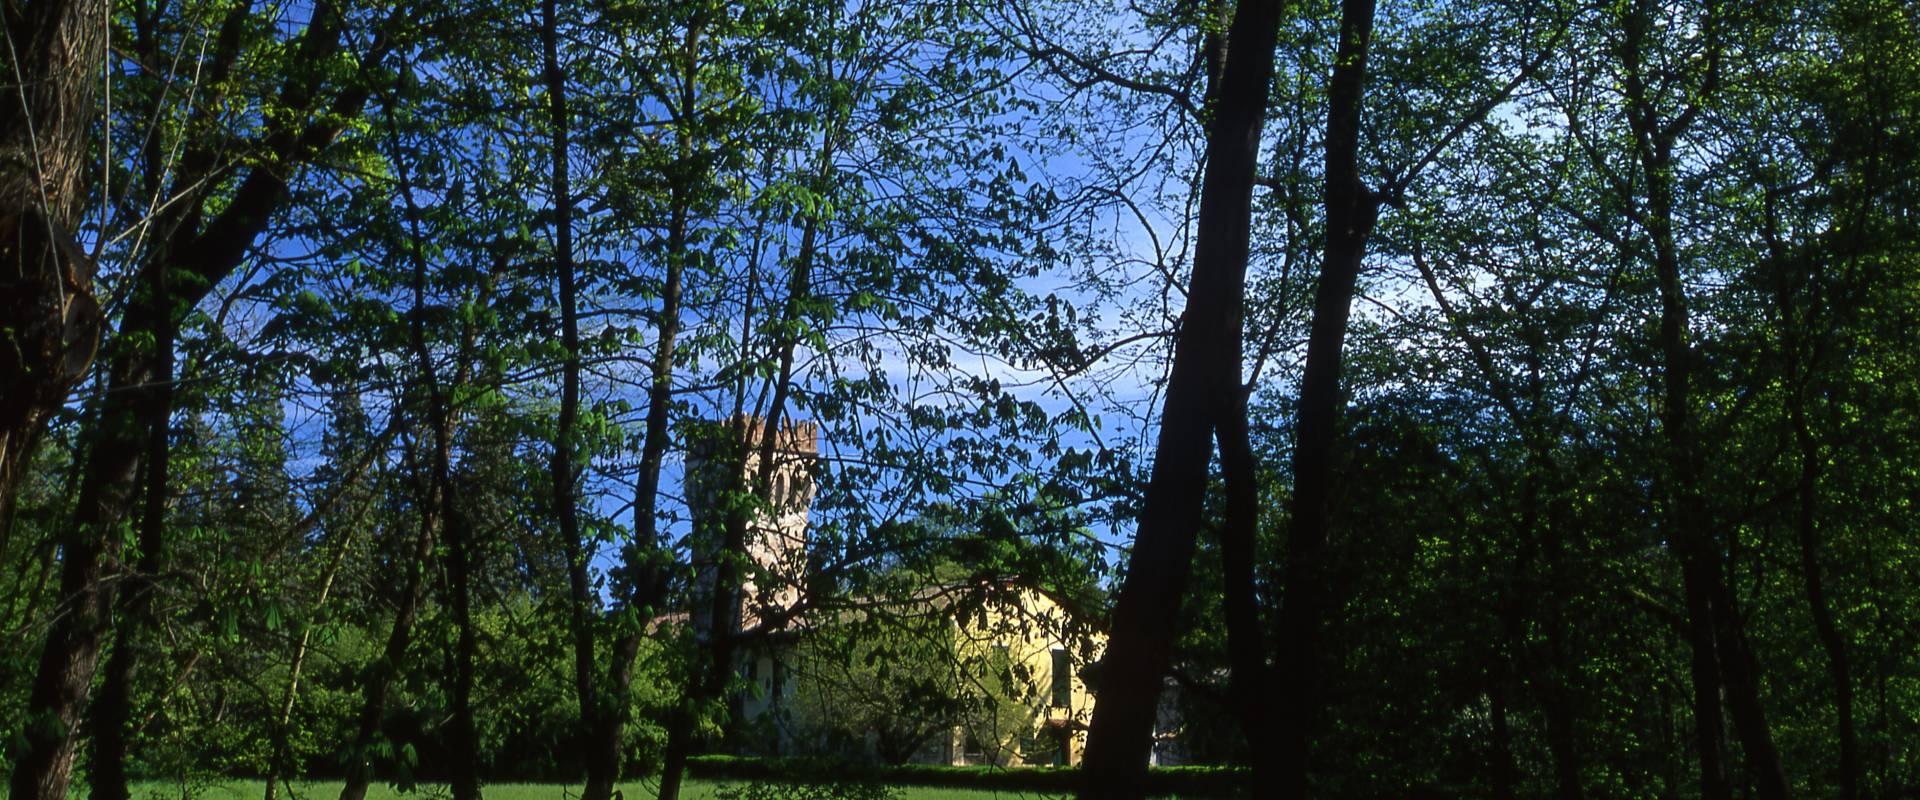 Villa Massari-Ricasoli foto di Meneghetti